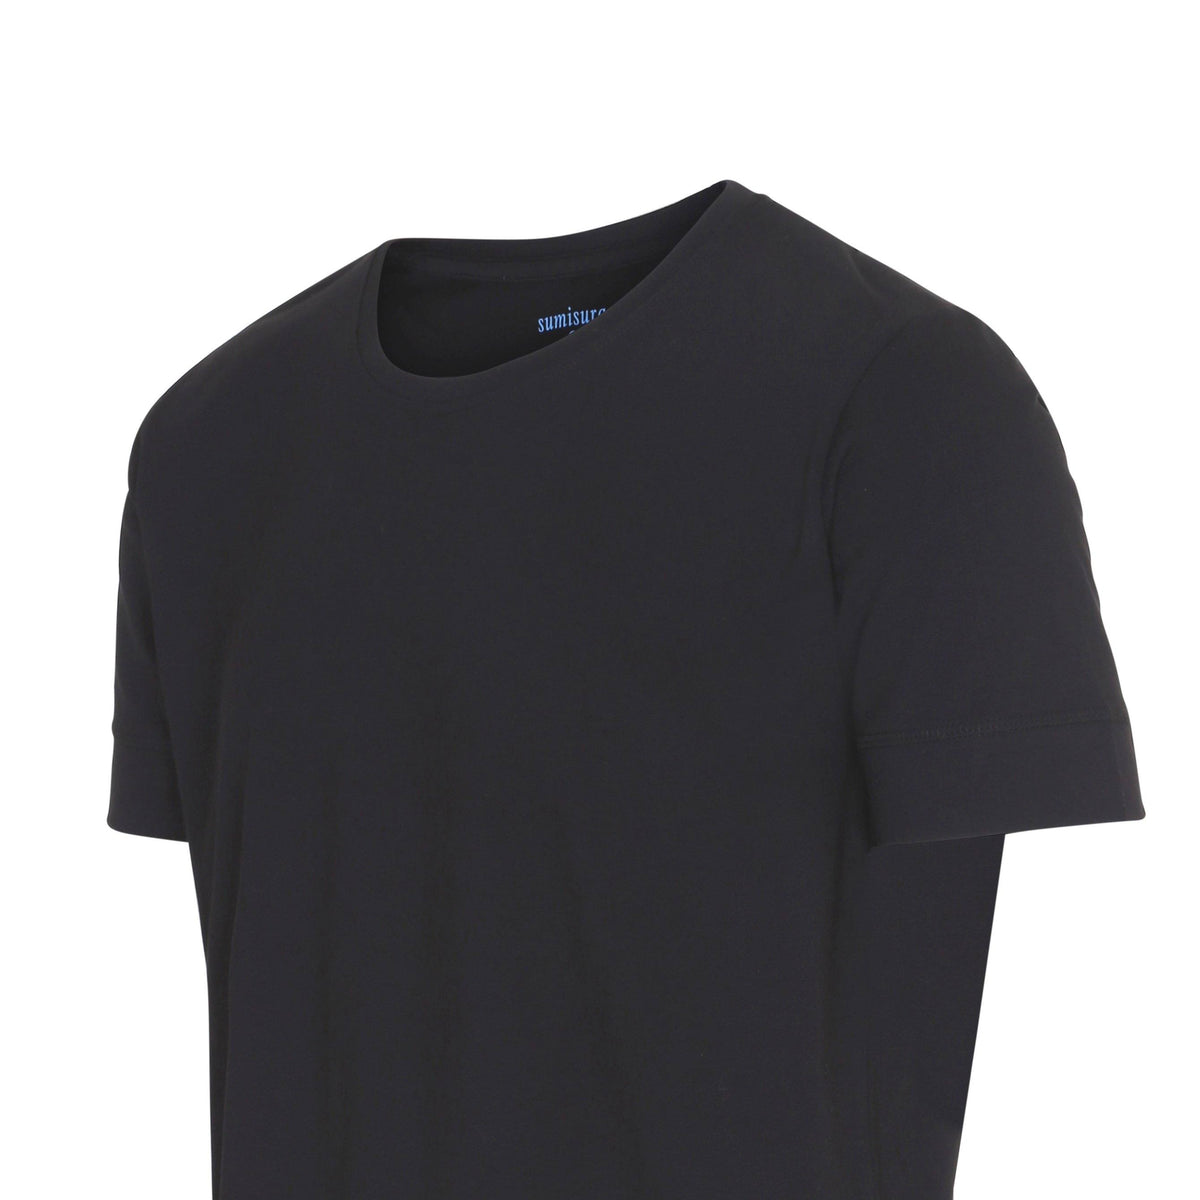 Bari – Heavy Black Round Neck – T-Shirts – Sumisura